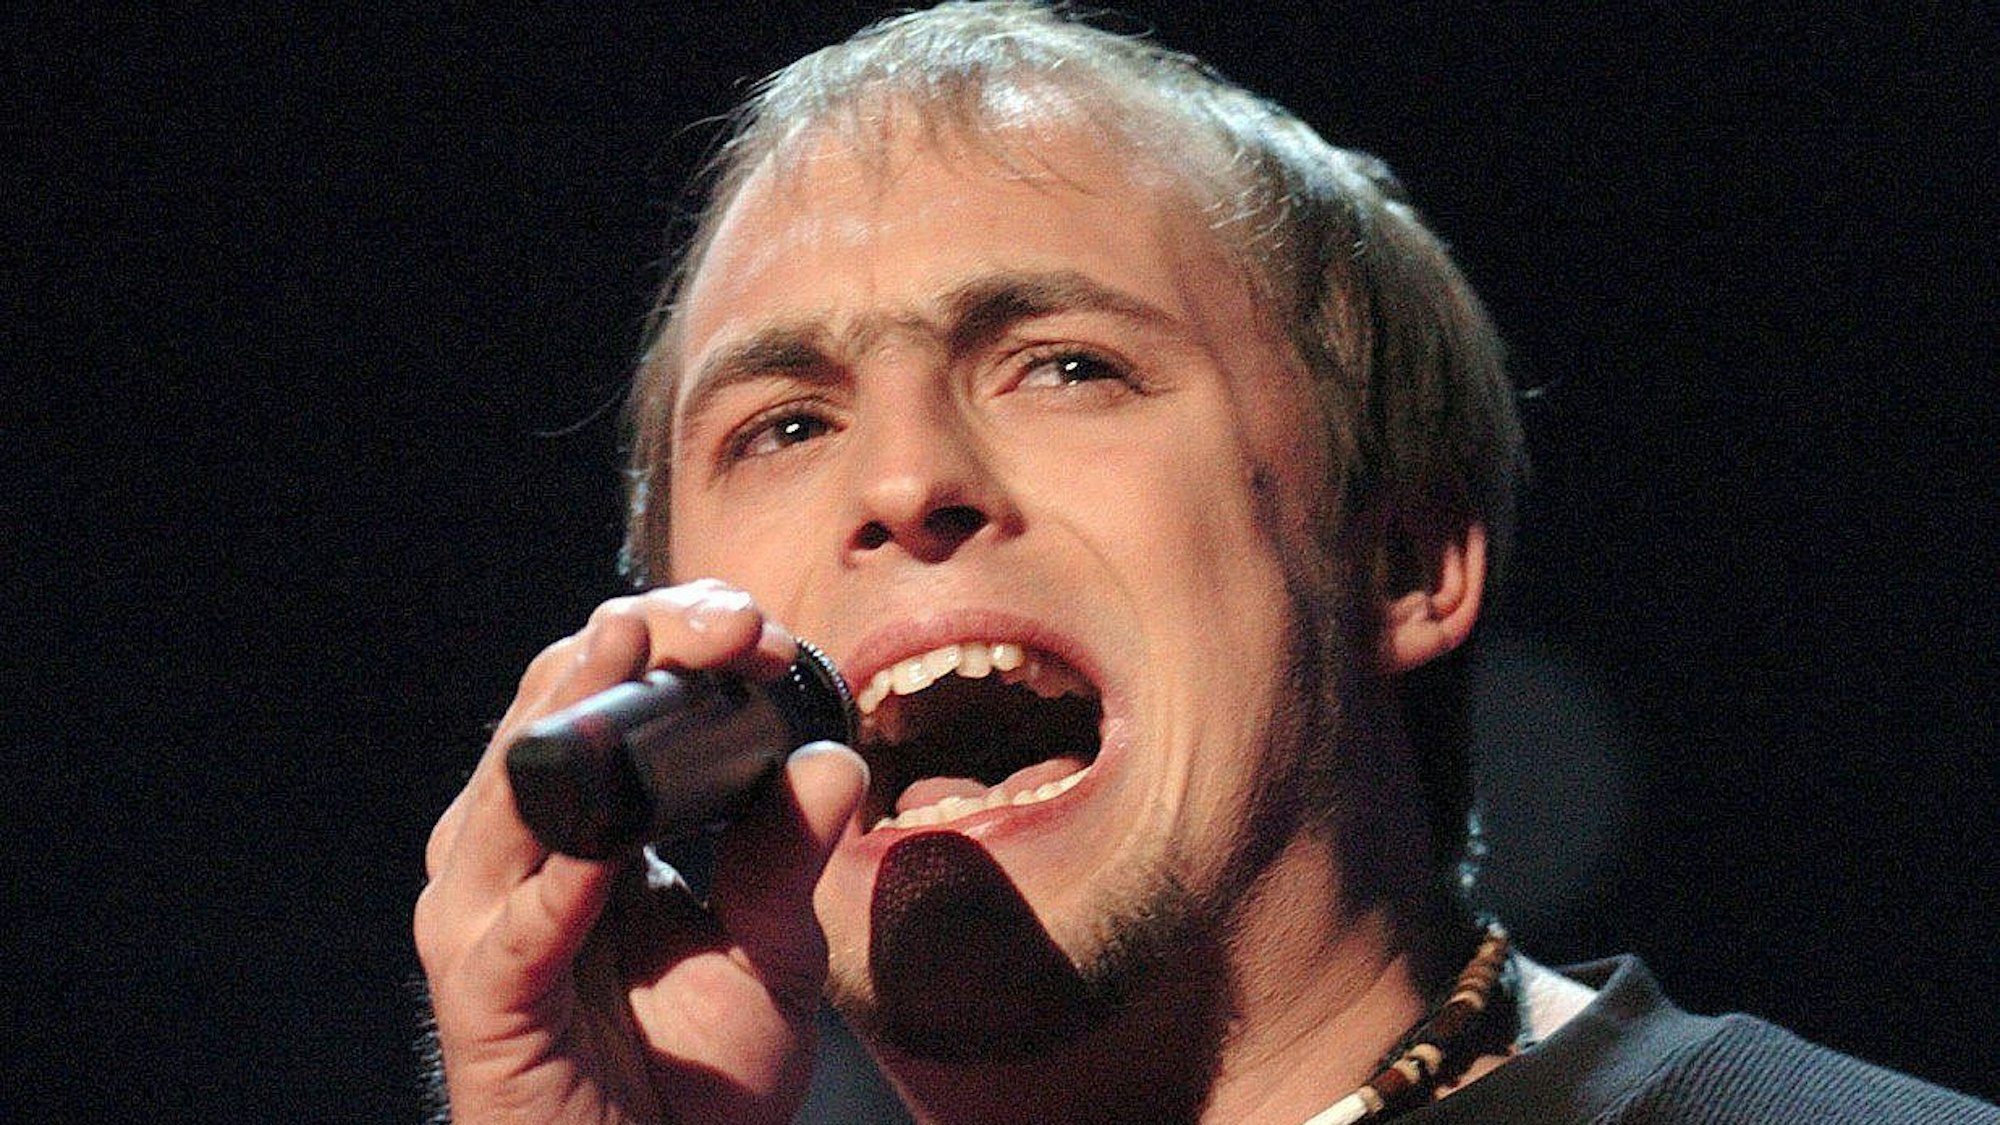 Sänger Max Mutzke singt während der Generalprobe zum Eurovision Song Contest 2004 in Istanbul.